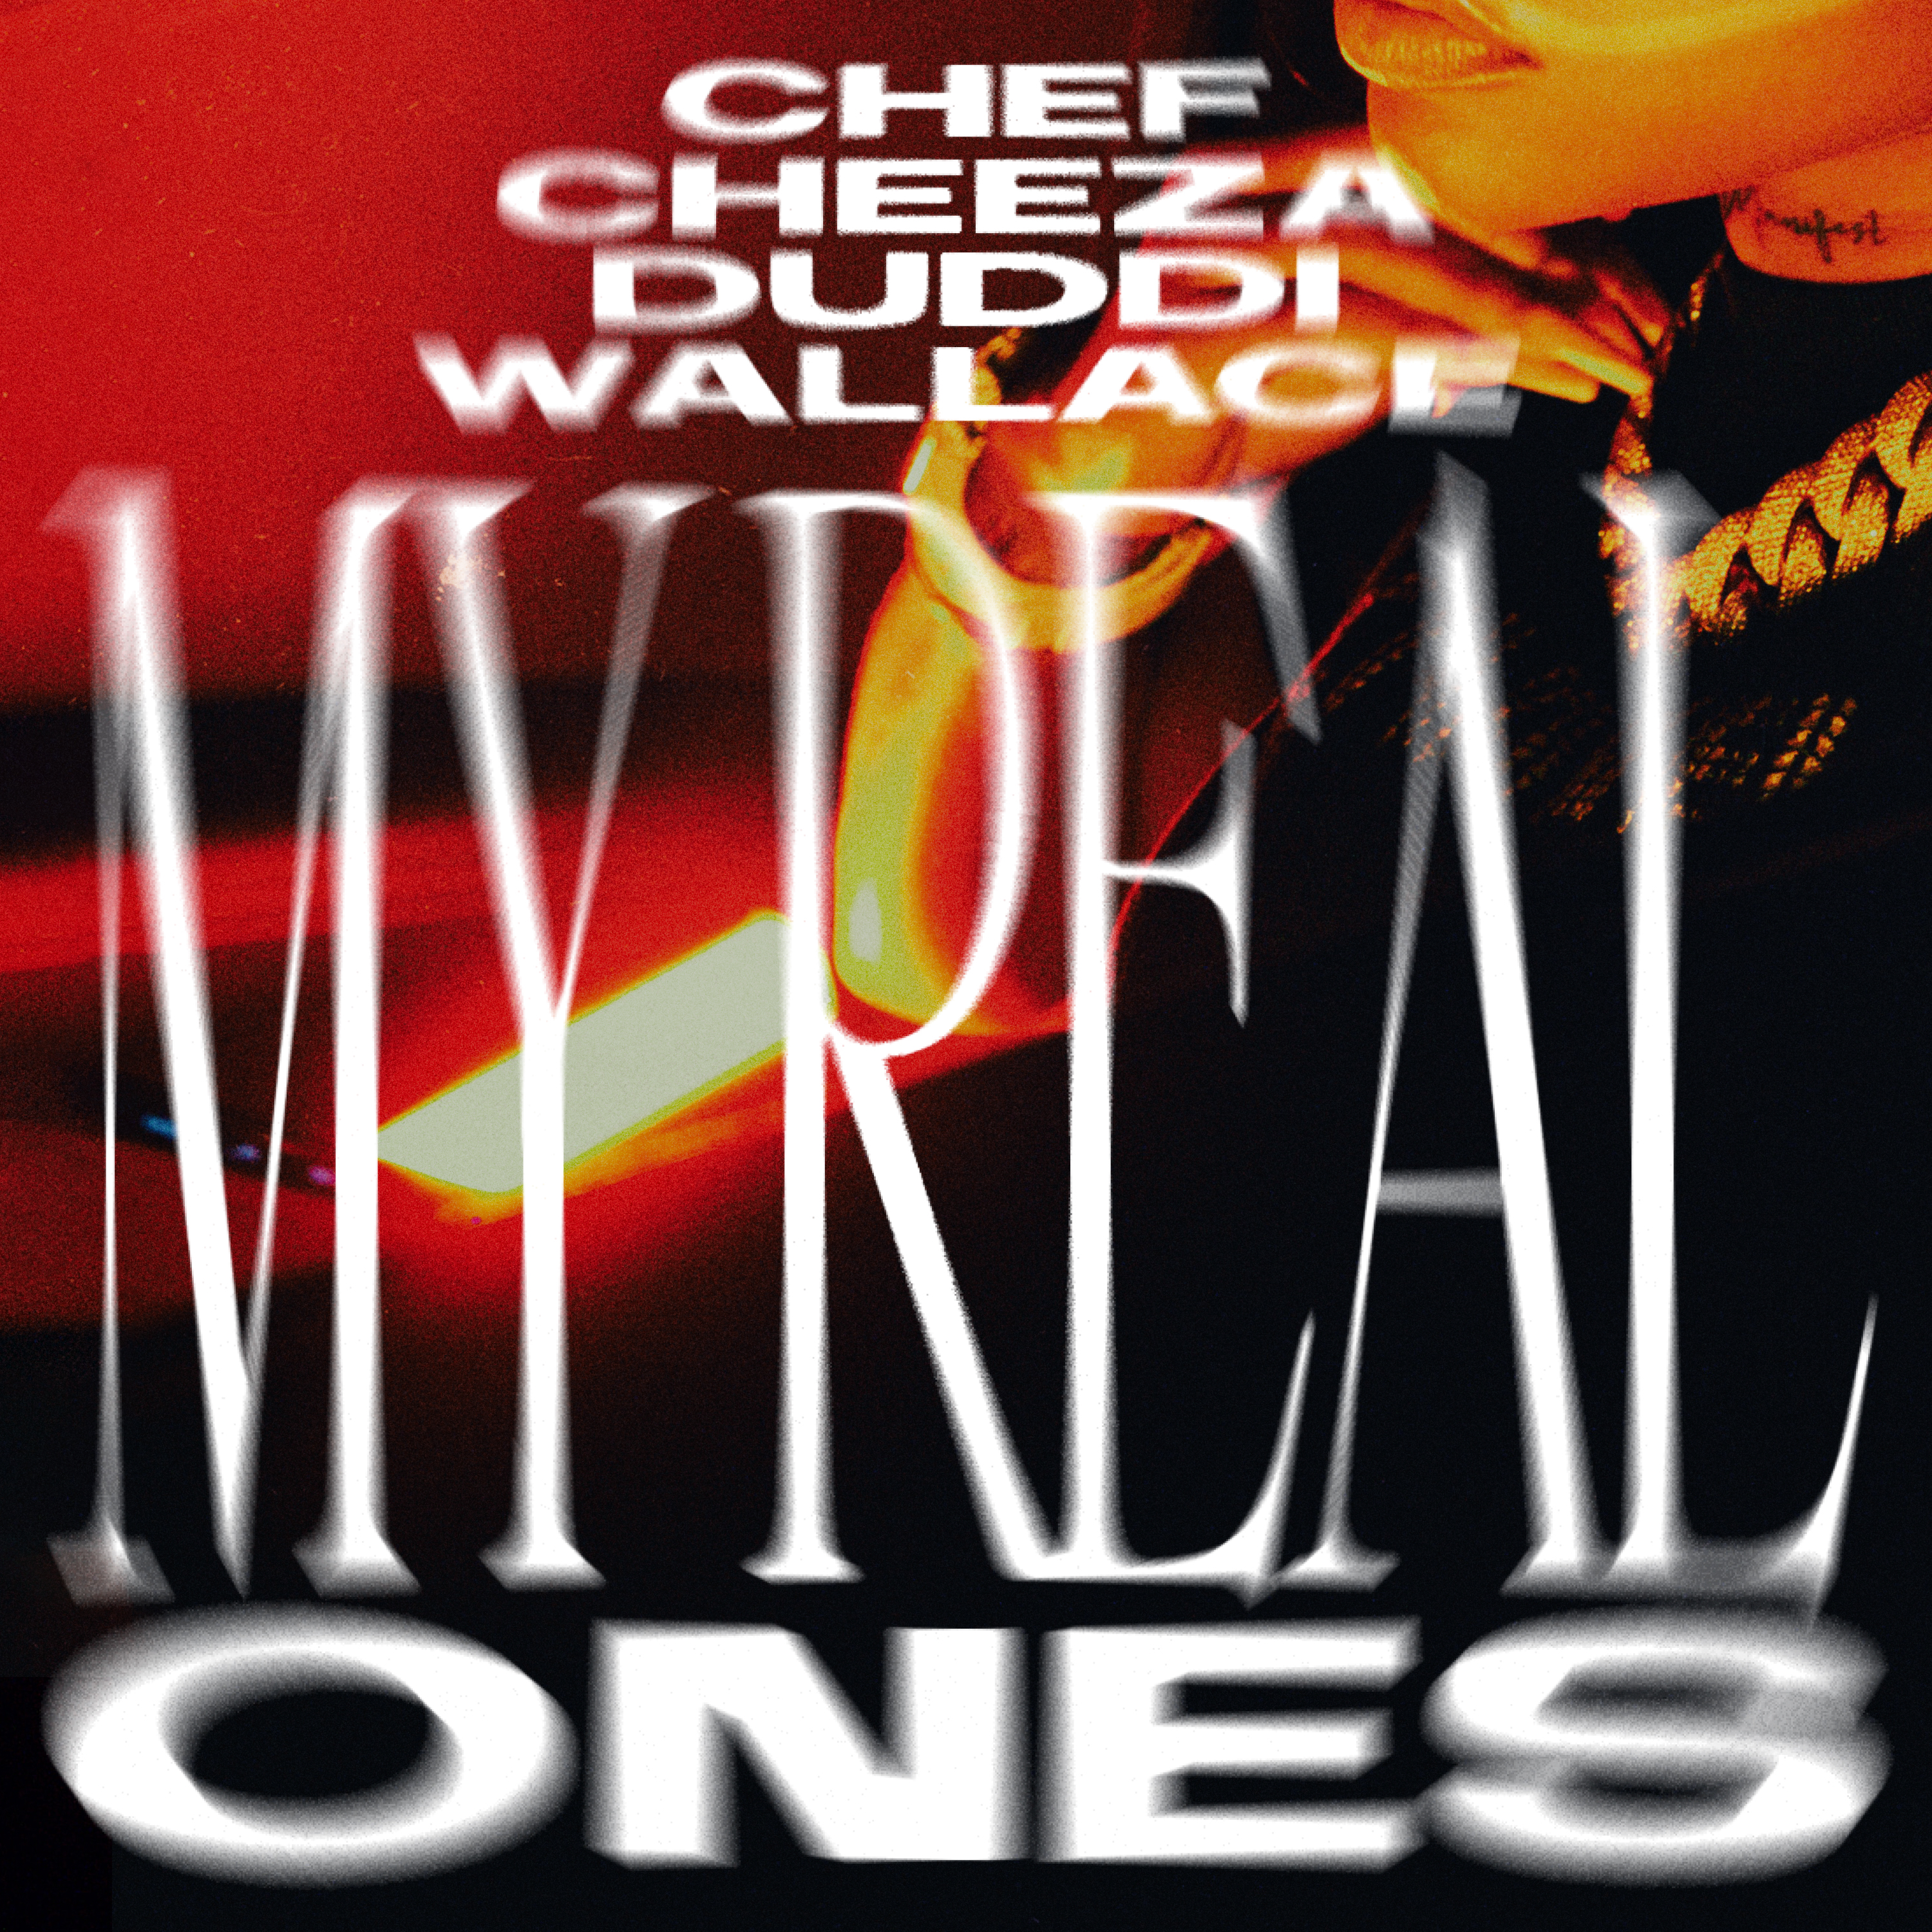 Chef_cheeza_my_real_ones__con_duddi_wallace_